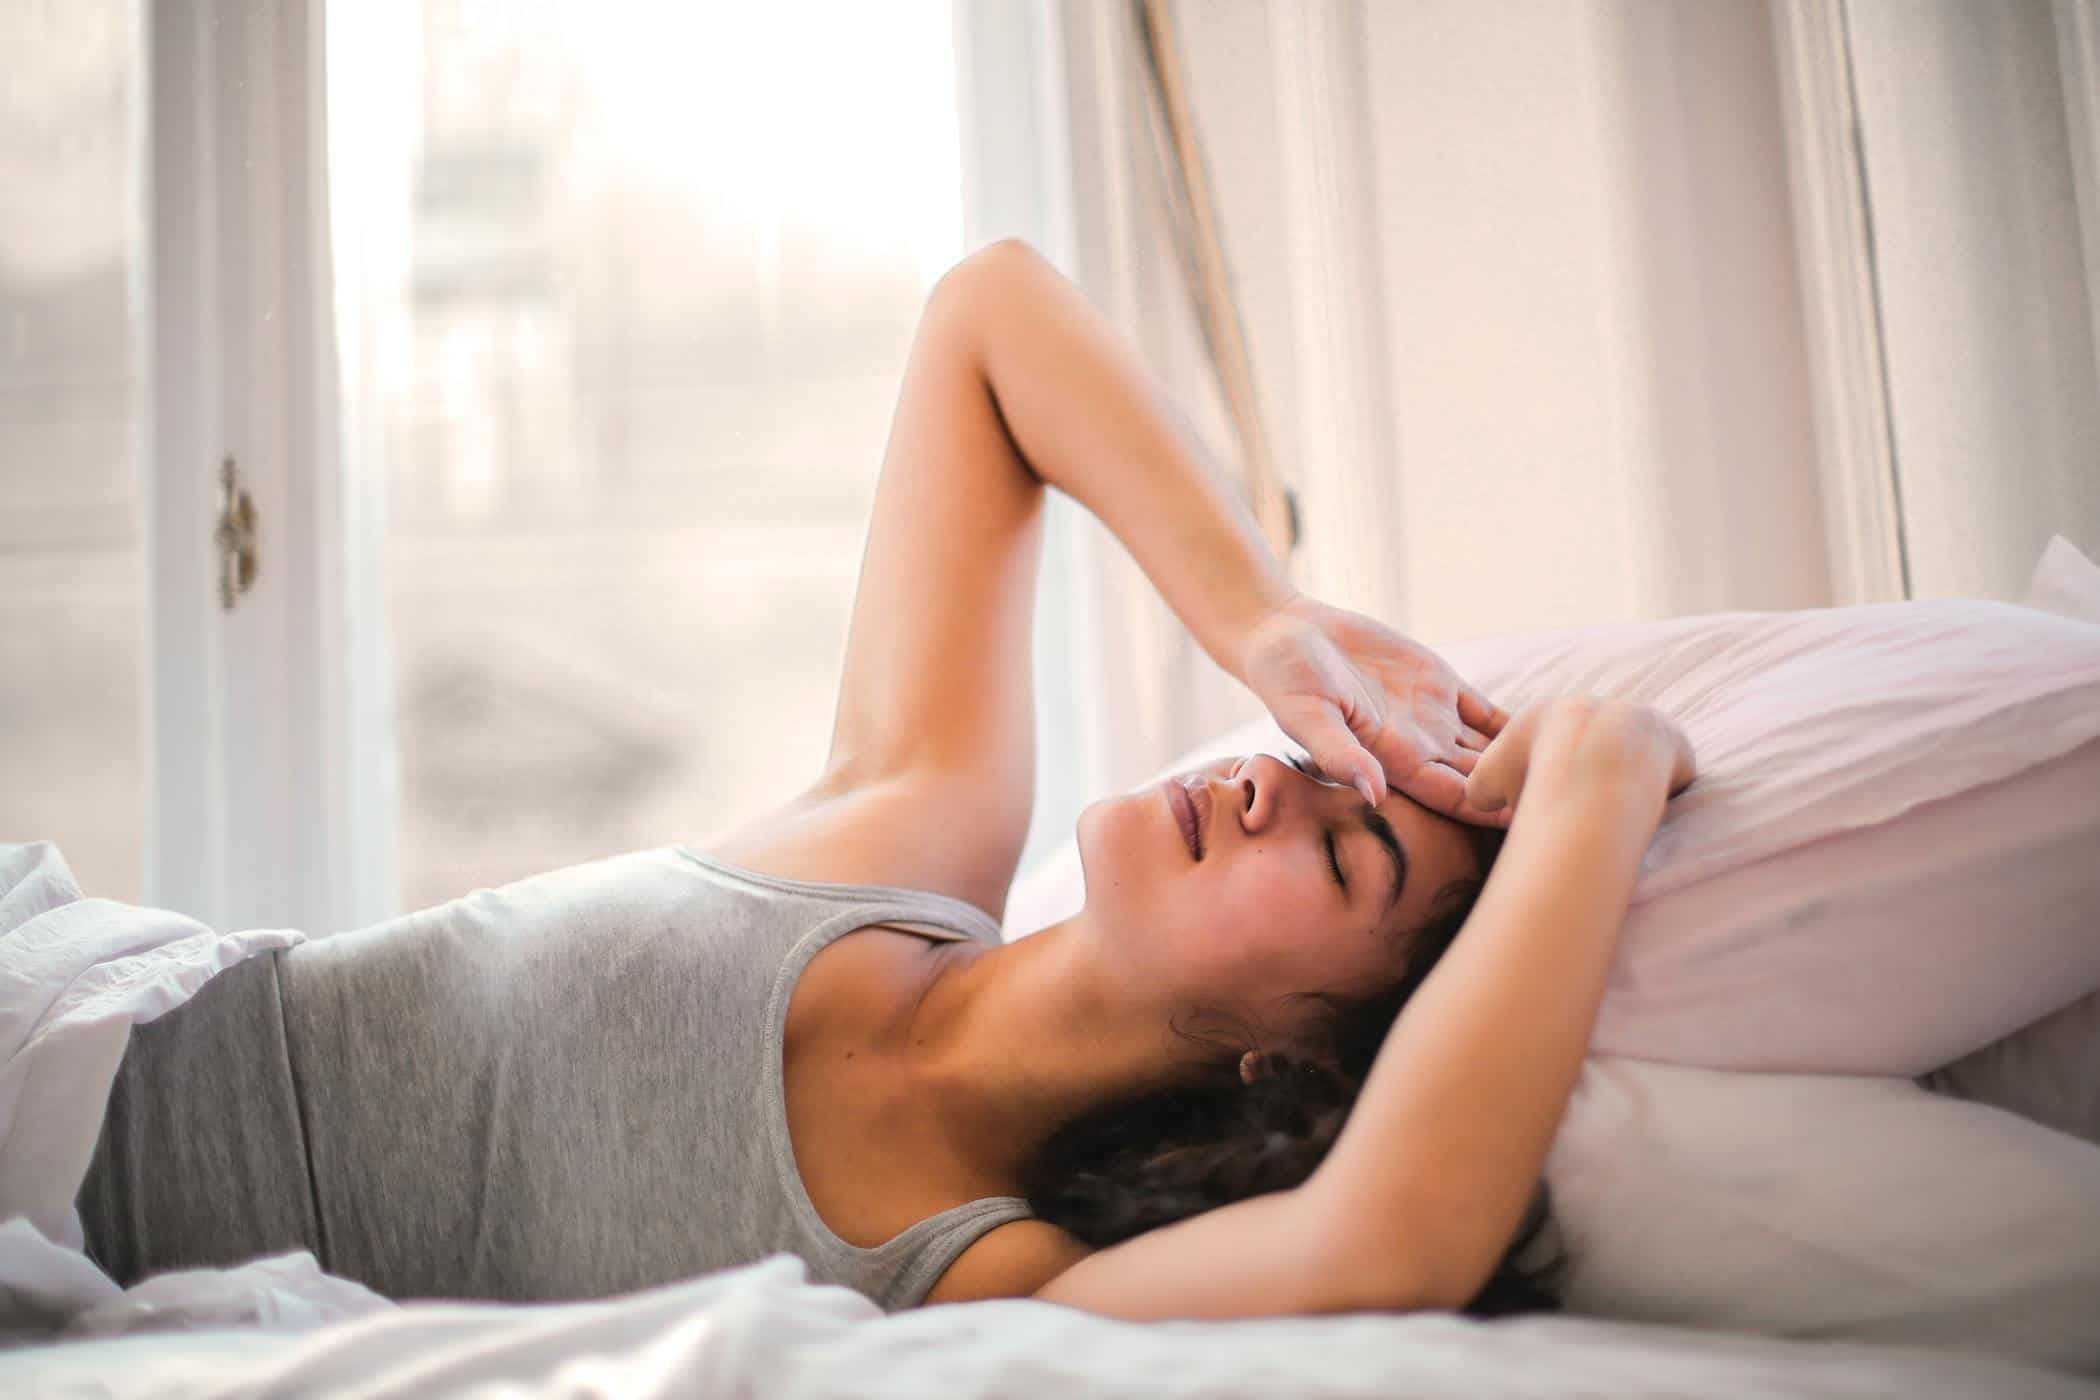 Upoznavanje s inercijom spavanja zbog koje ste mrzovoljni kada se probudite